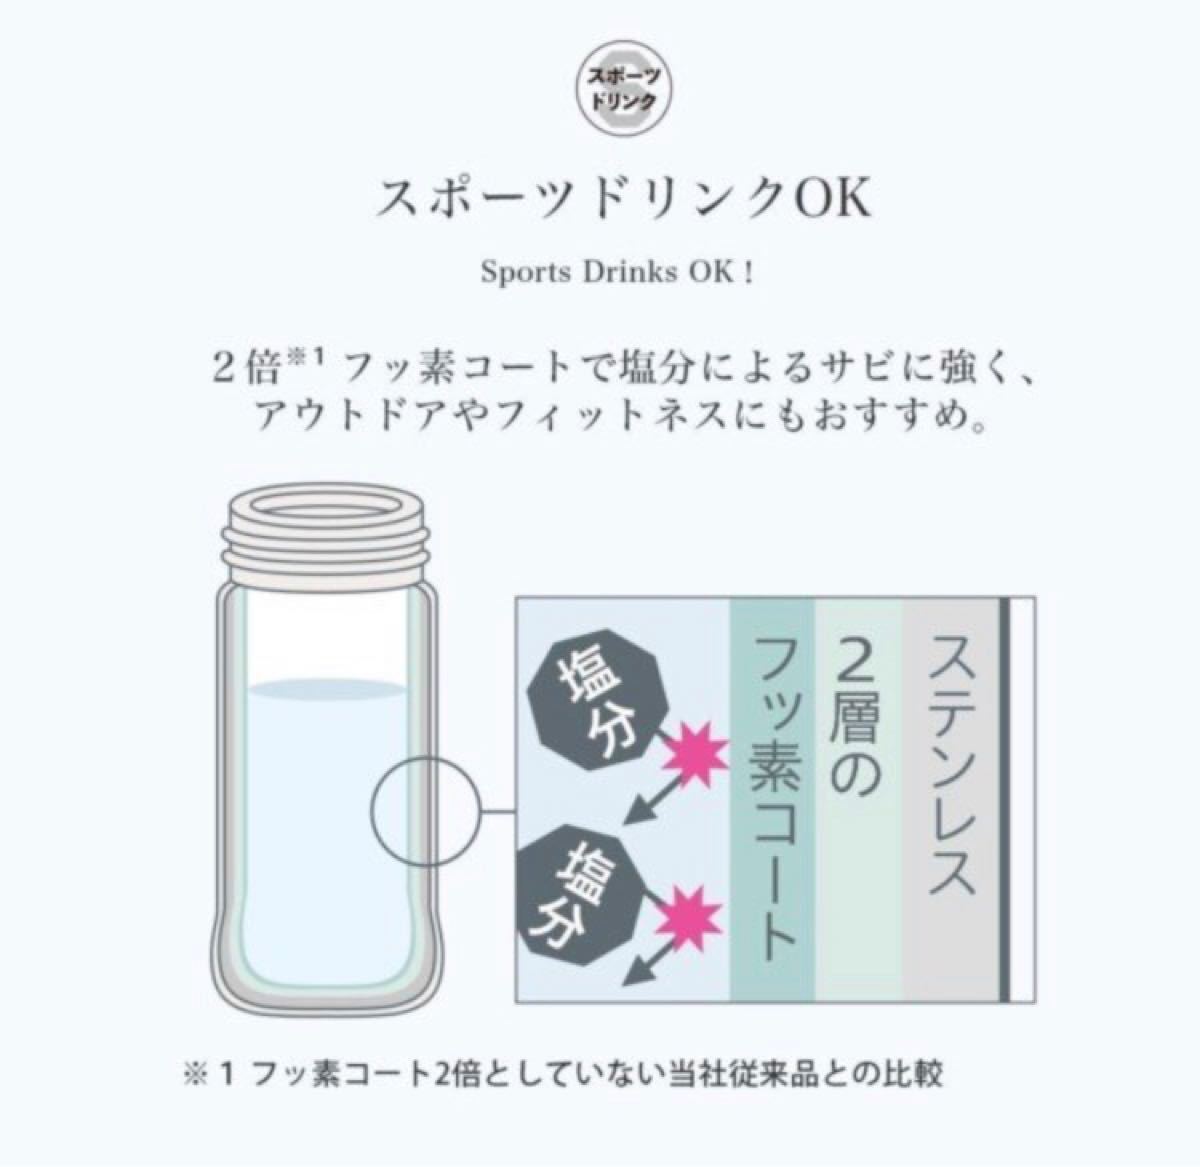 【残りわずか】ZOJIRUSHI 象印 ステンレスマグ ステンレスボトル 水筒 360ml ピンク 値下げ不可